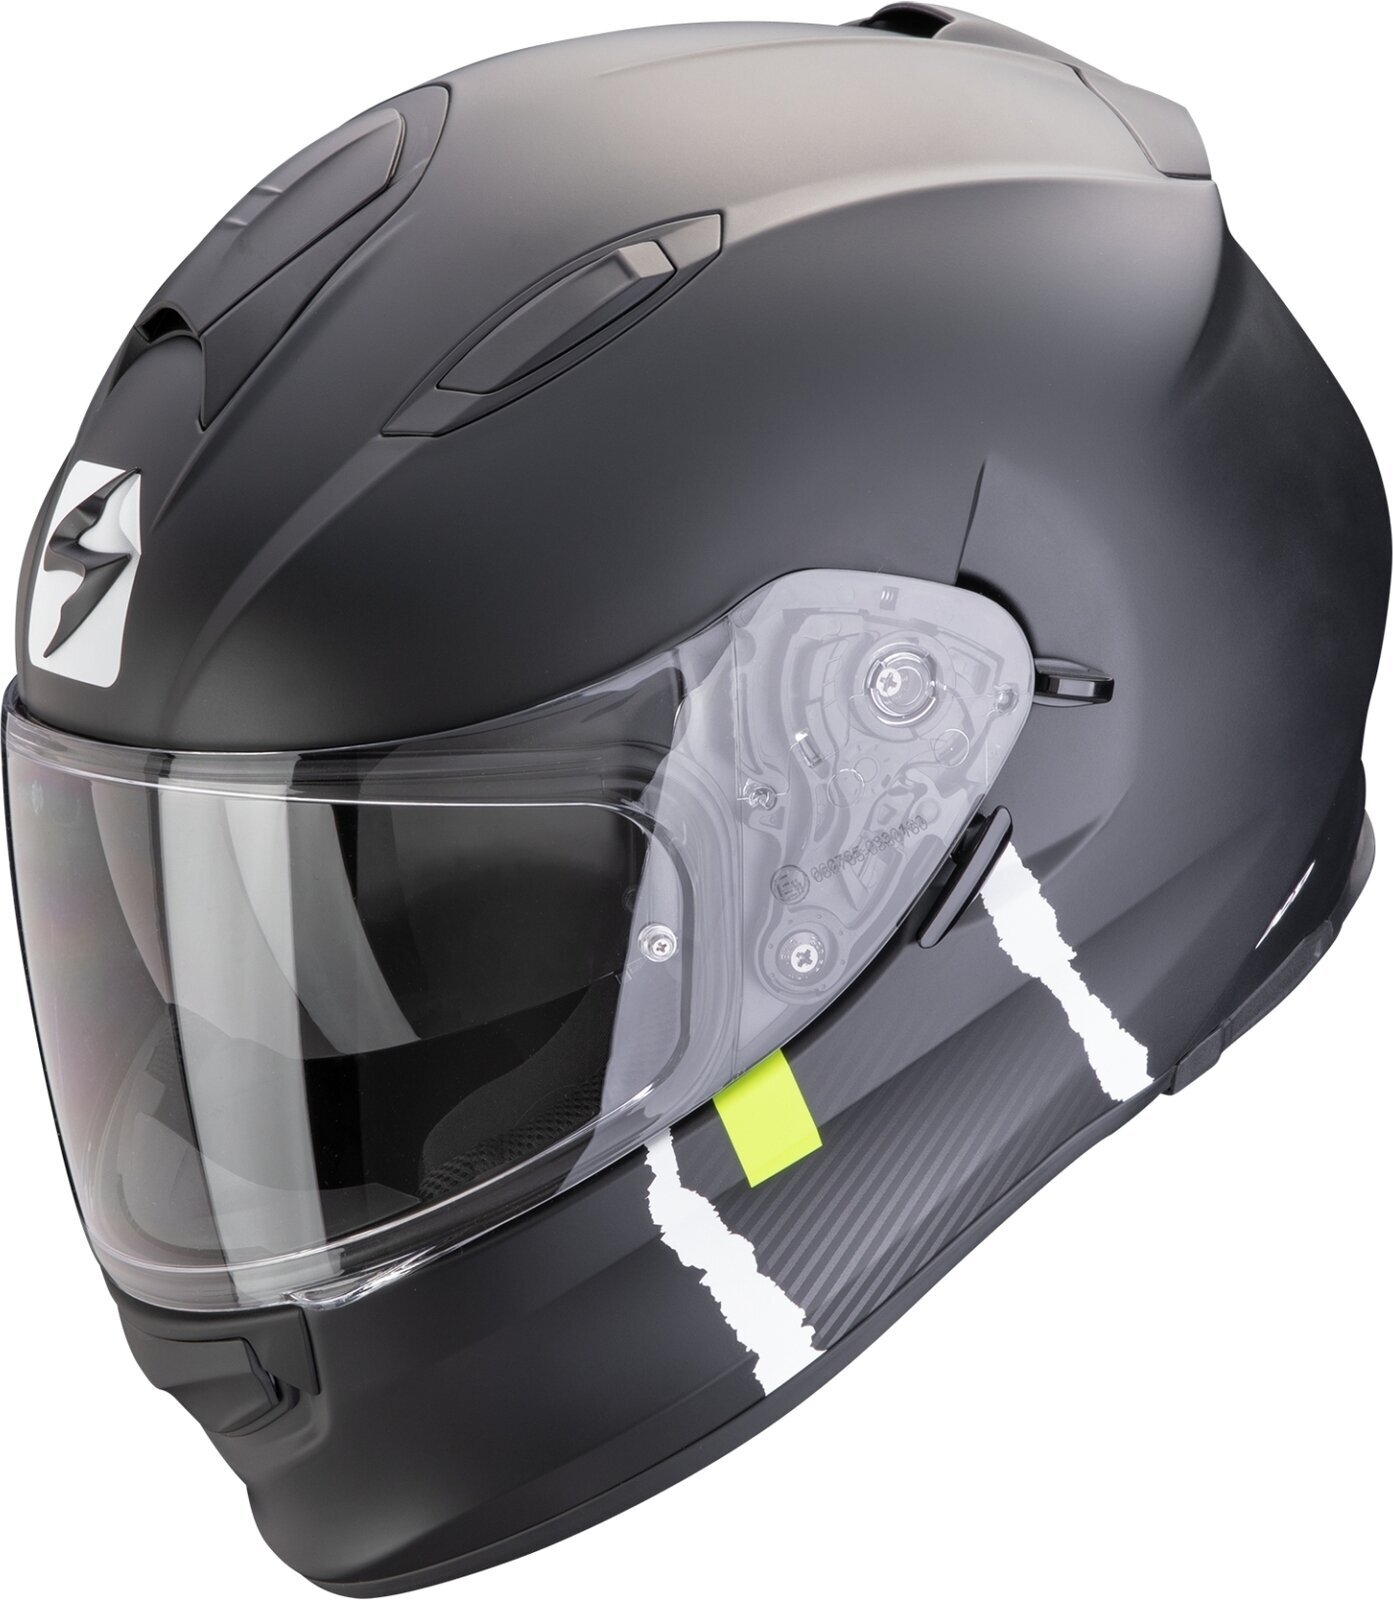 Helm Scorpion EXO 491 CODE Matt Black/Silver XL Helm